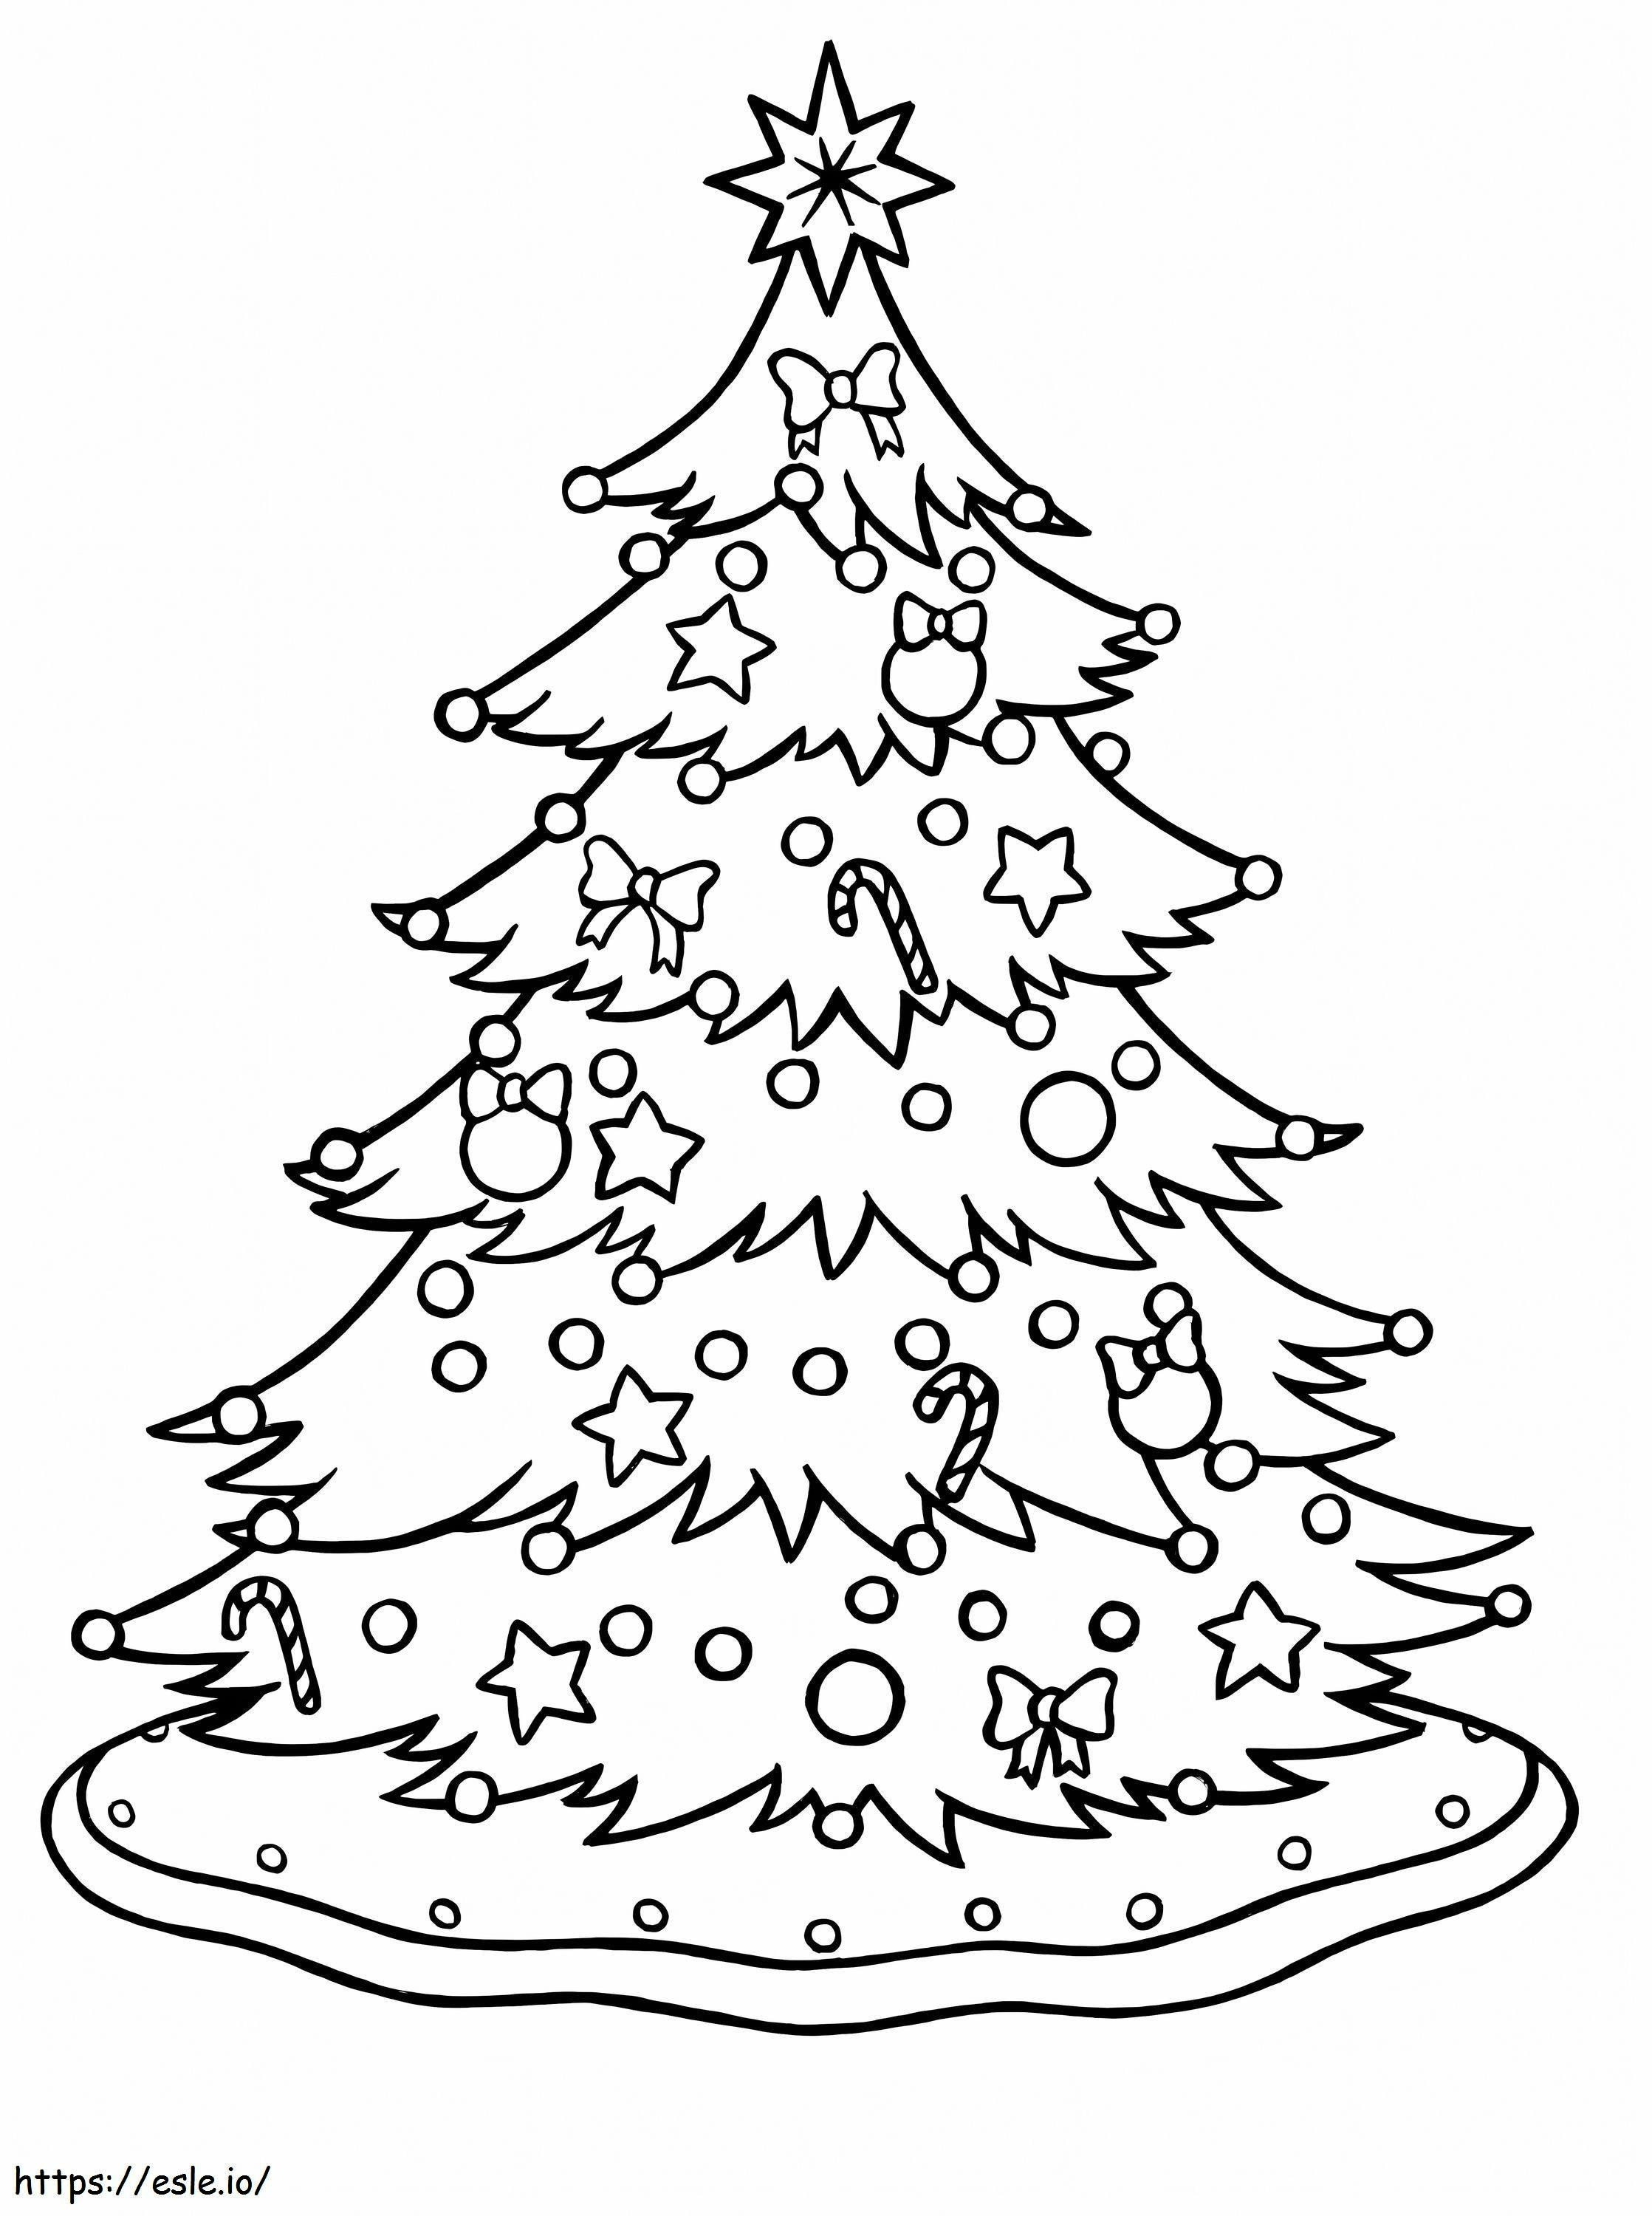 Wunderschöner großer Weihnachtsbaum ausmalbilder